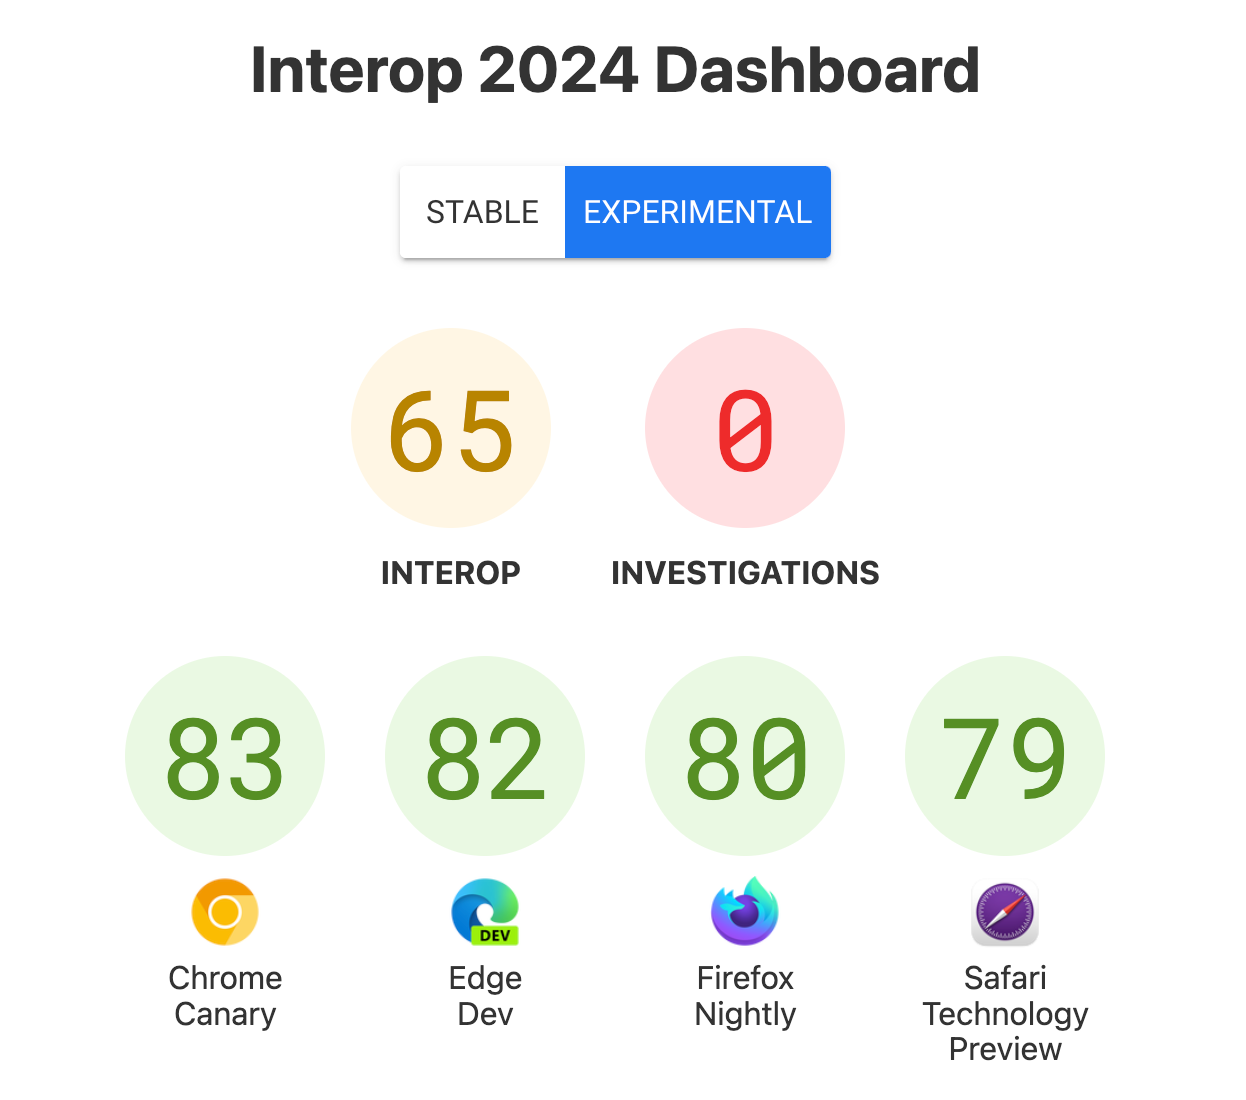 Screenshot della dashboard con i punteggi - Interoperabilità: 65, Indagini: 0, Chrome Canary: 83, Edge Dev: 82, Firefox Nightly: 80, Safari Technology Preview: 79.